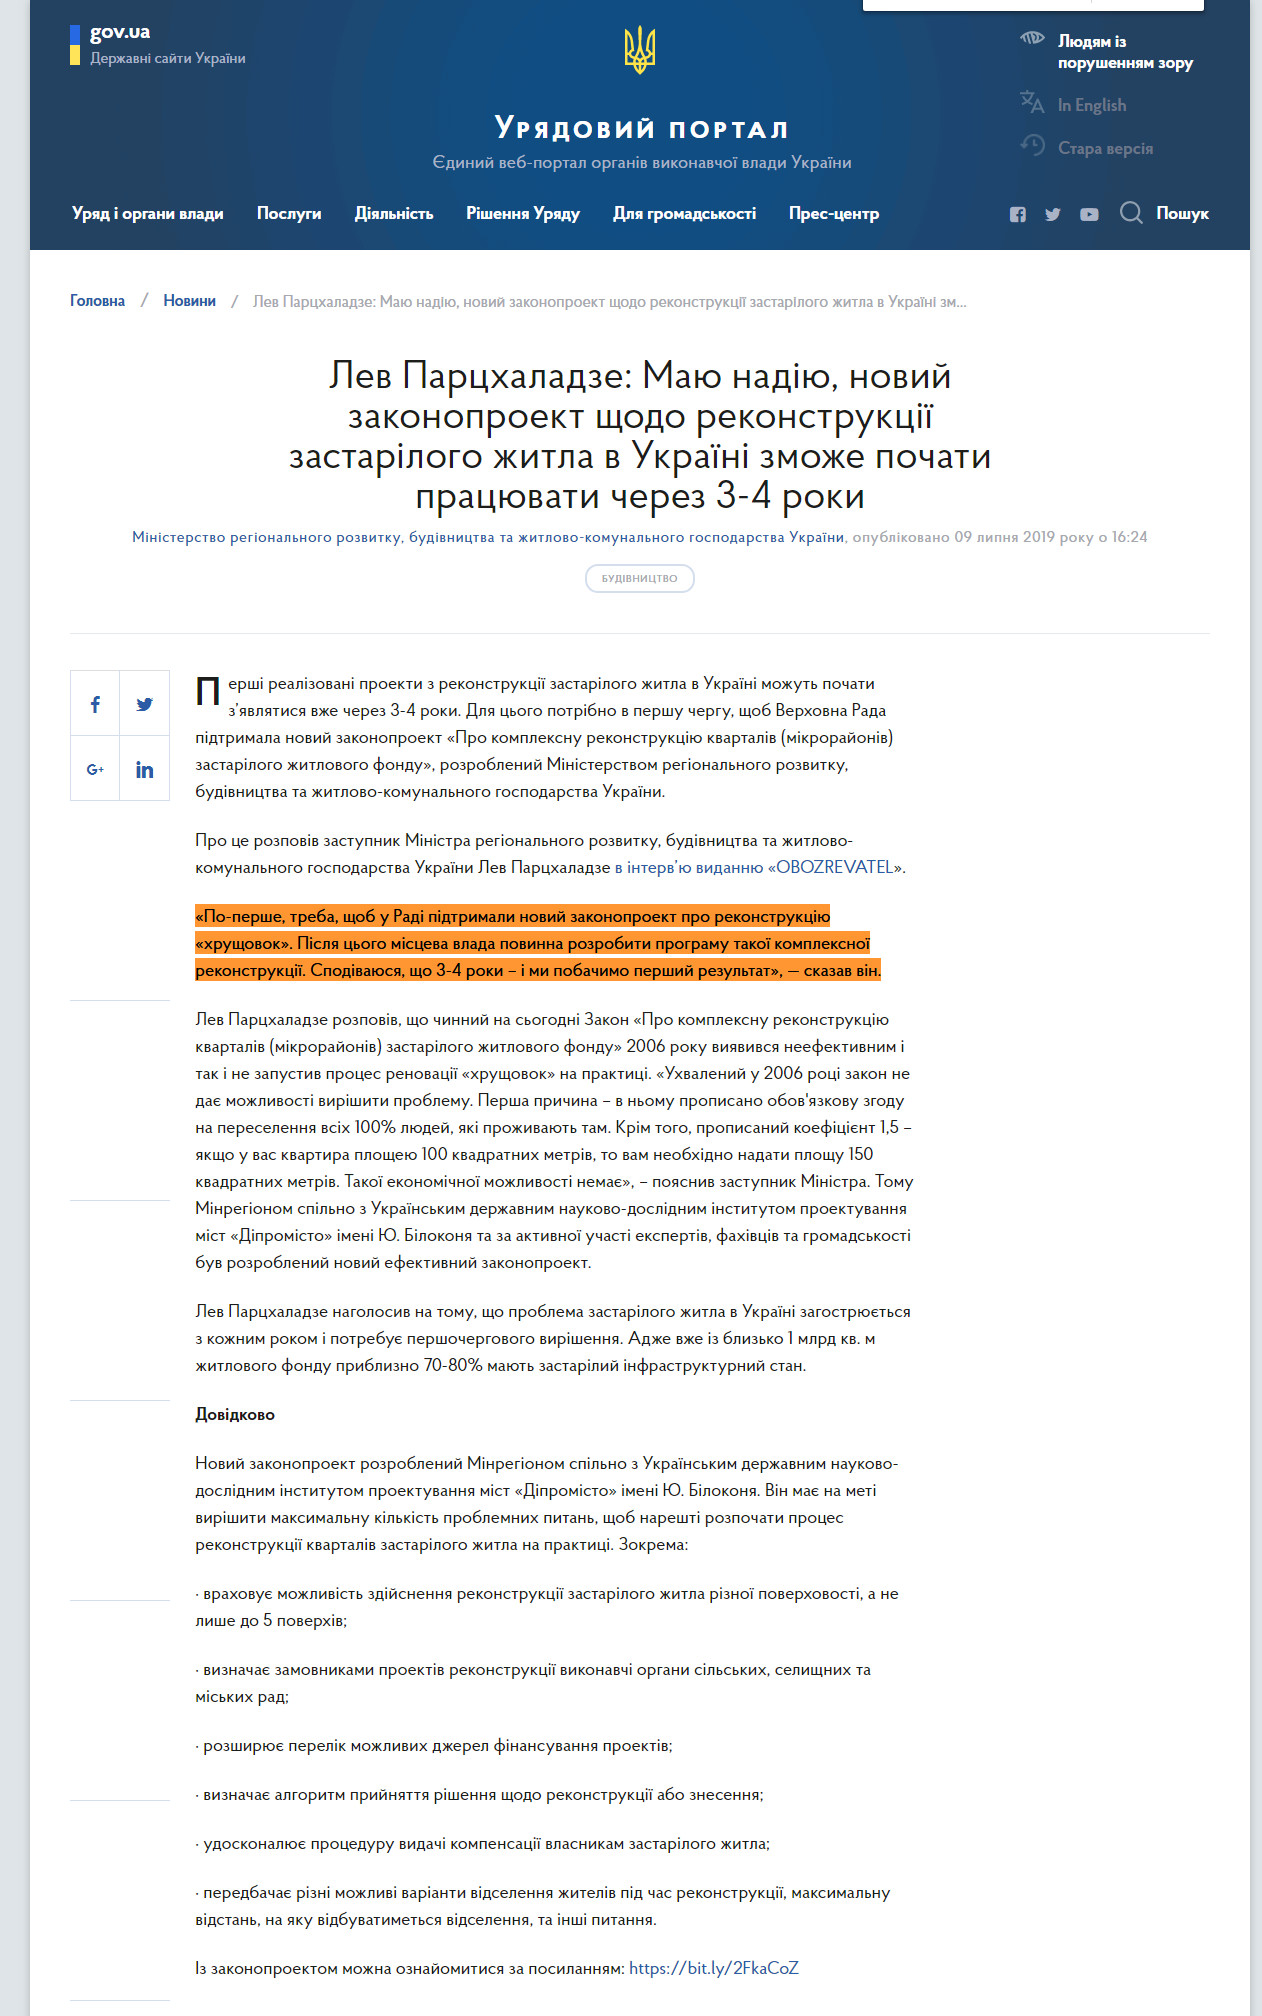 https://www.kmu.gov.ua/ua/news/lev-parchaladze-mayu-nadiyu-novij-zakonoproekt-shchodo-rekonstrukciyi-zastarilogo-zhitla-v-ukrayini-zmozhe-pochati-pracyuvati-cherez-3-4-roki